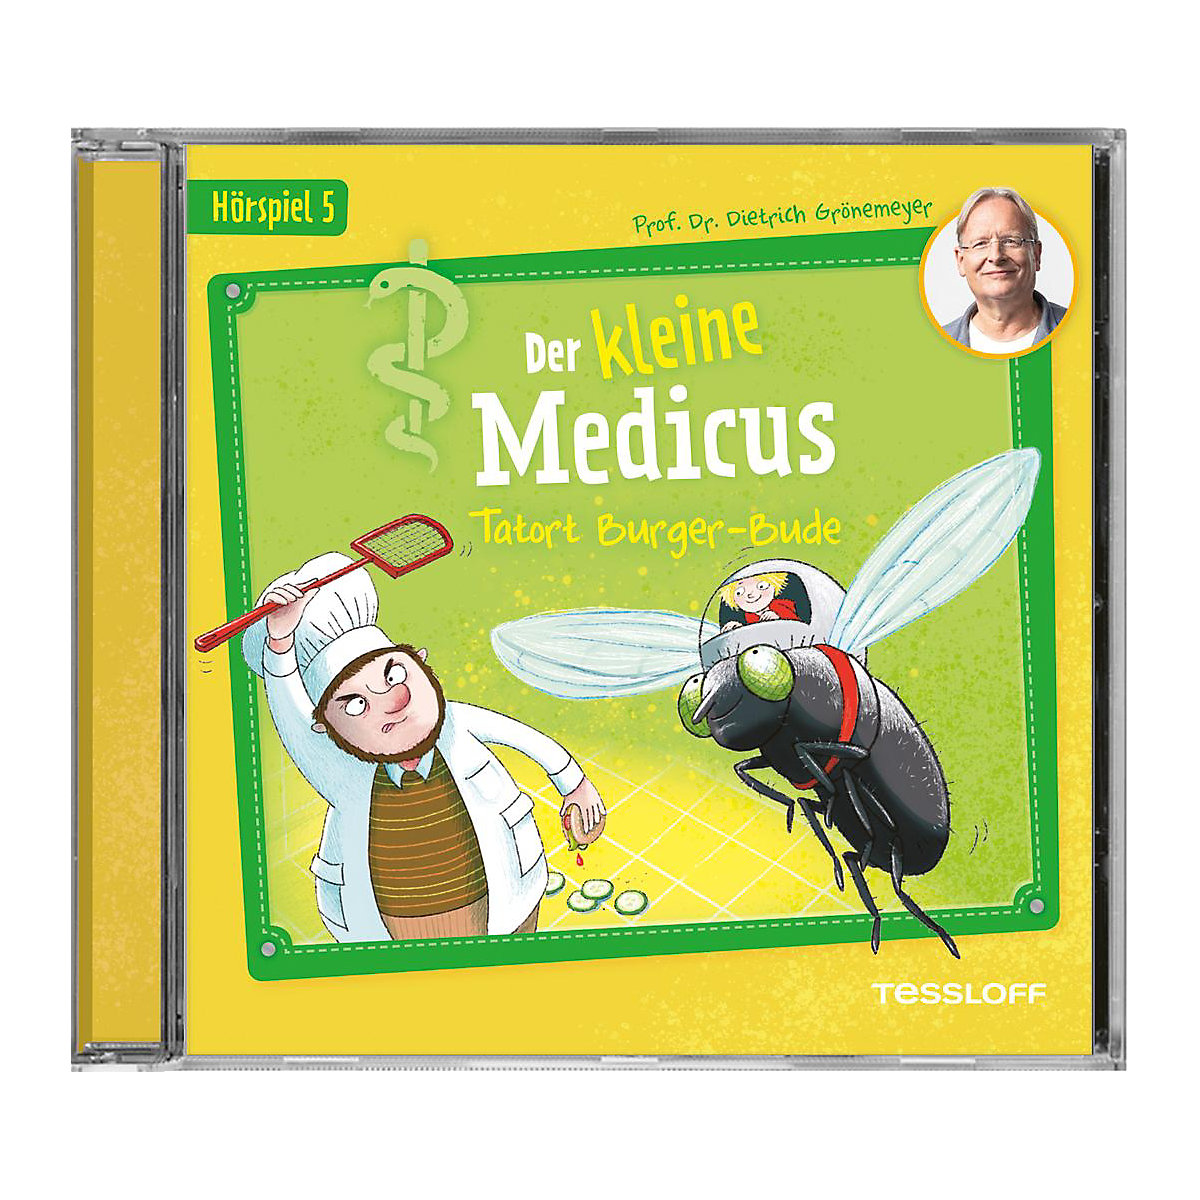 Der kleine Medicus. Hörspiel 5: Tatort Burger-Bude Audio-CD